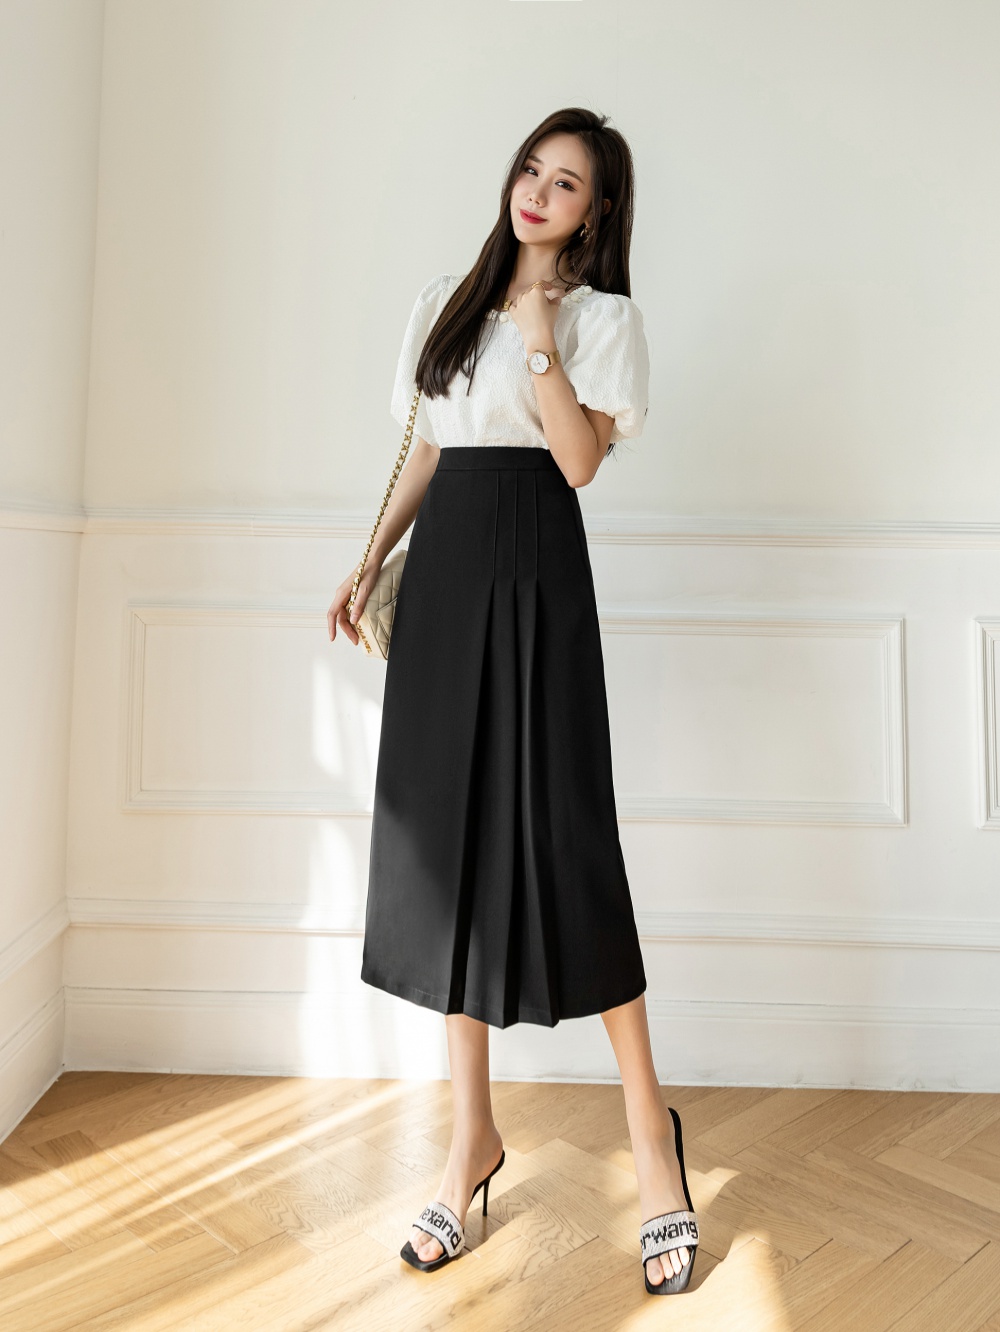 Autumn business suit high waist long skirt for women